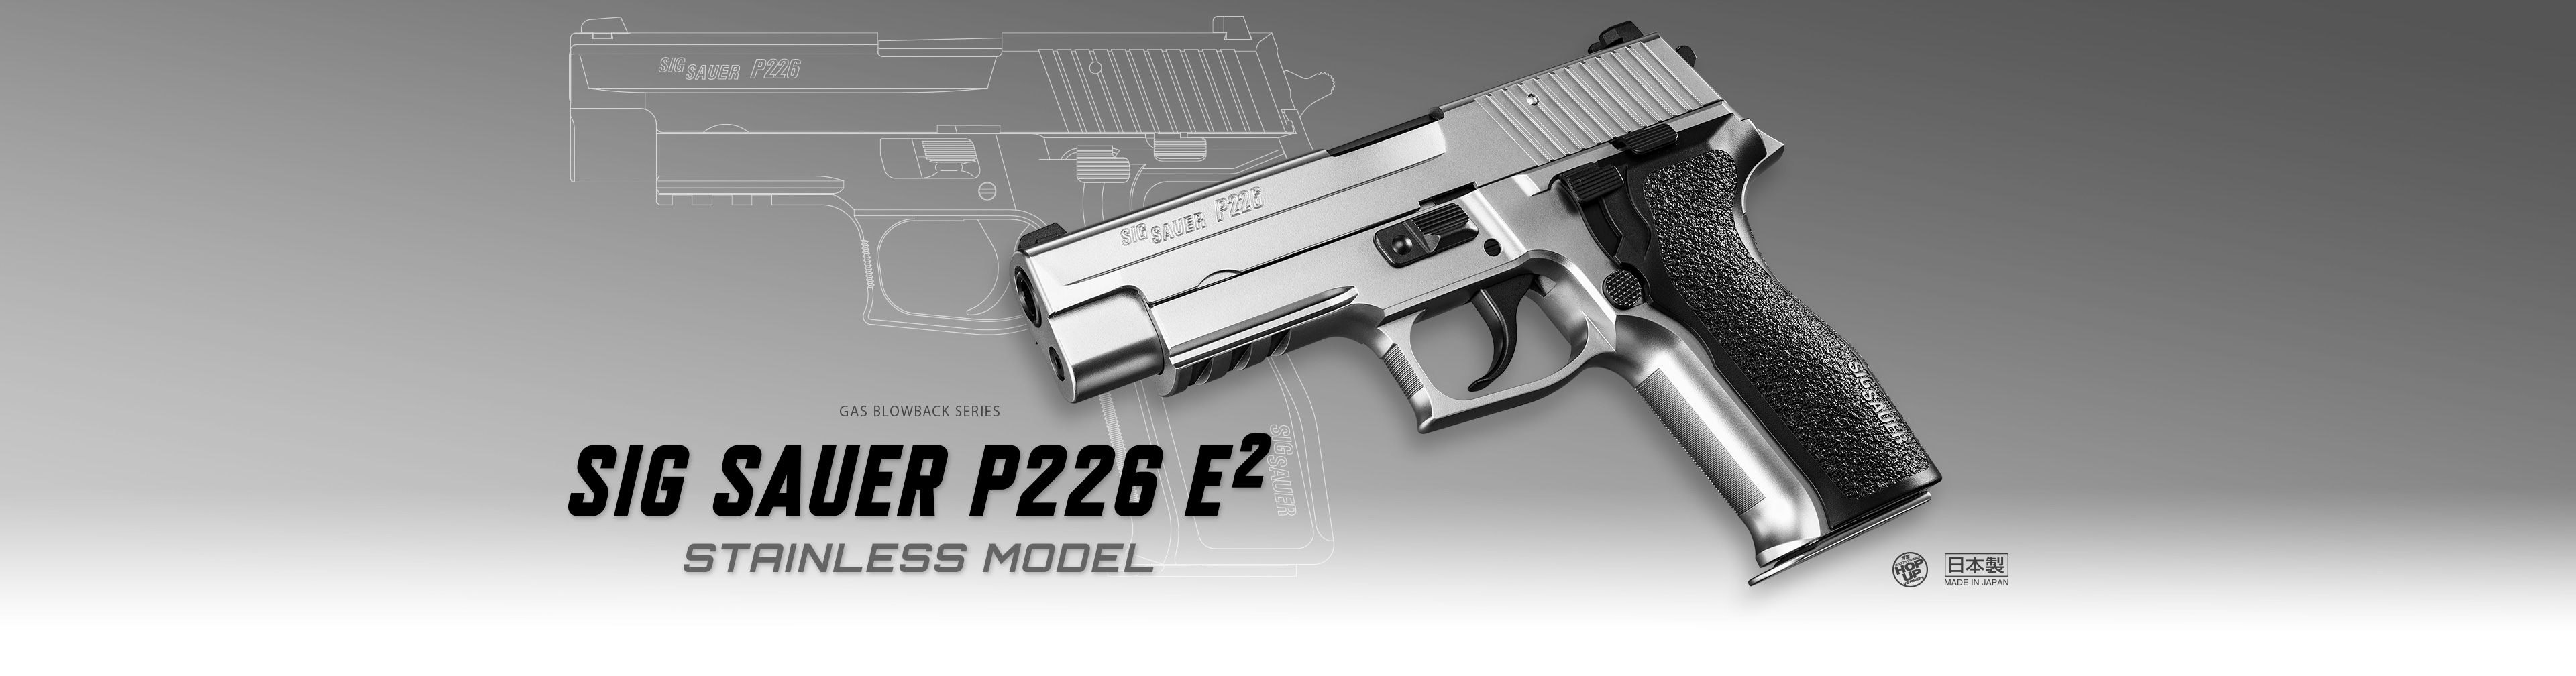 シグ ザウエル P226 E2 ステンレスモデル - ガスブローバック | 東京 